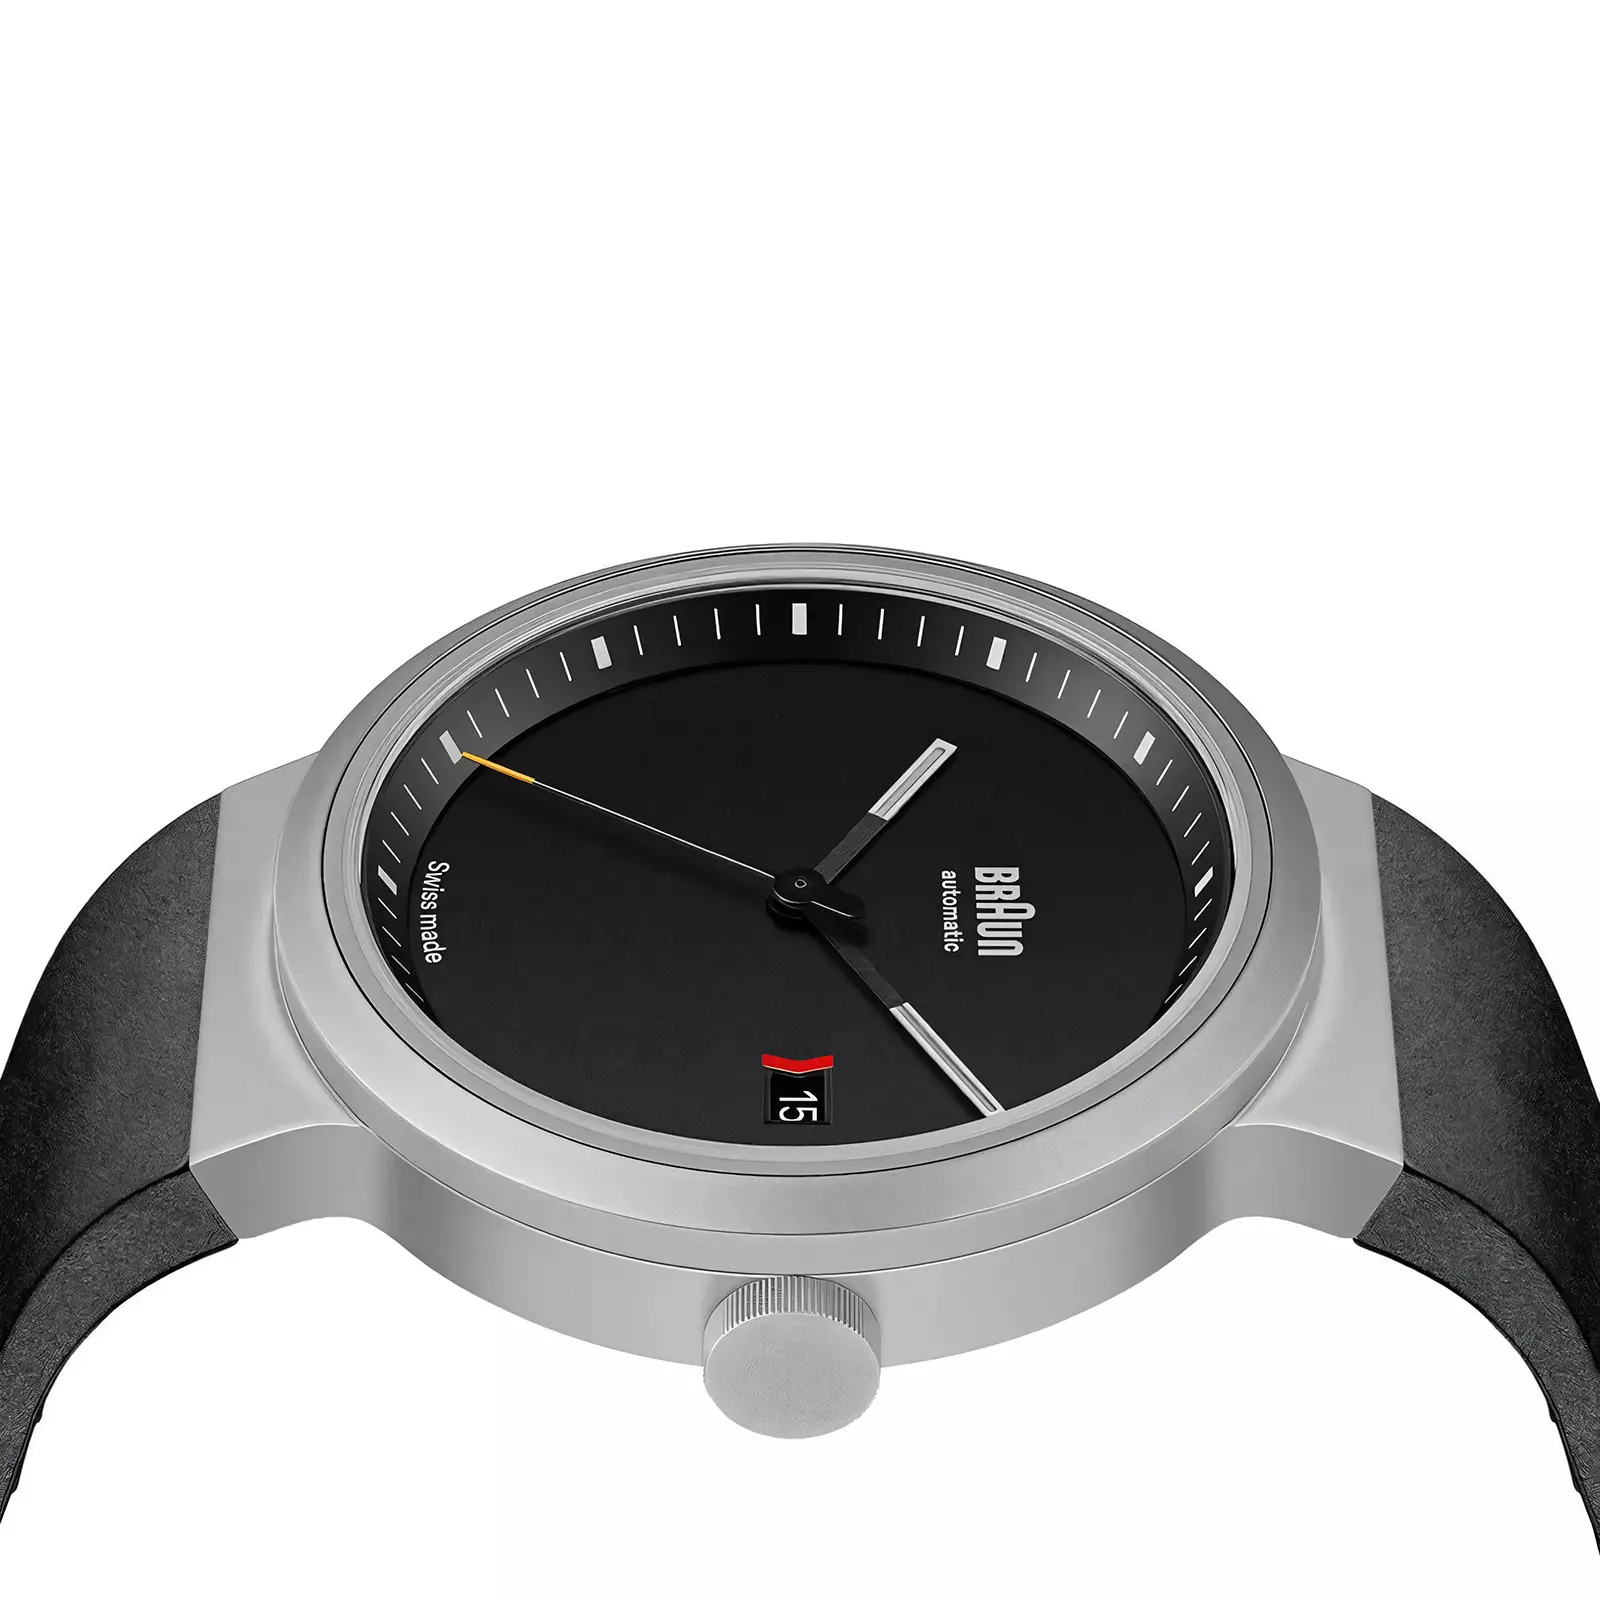 Braun lance une collection exclusive de montres fabriquées en Suisse